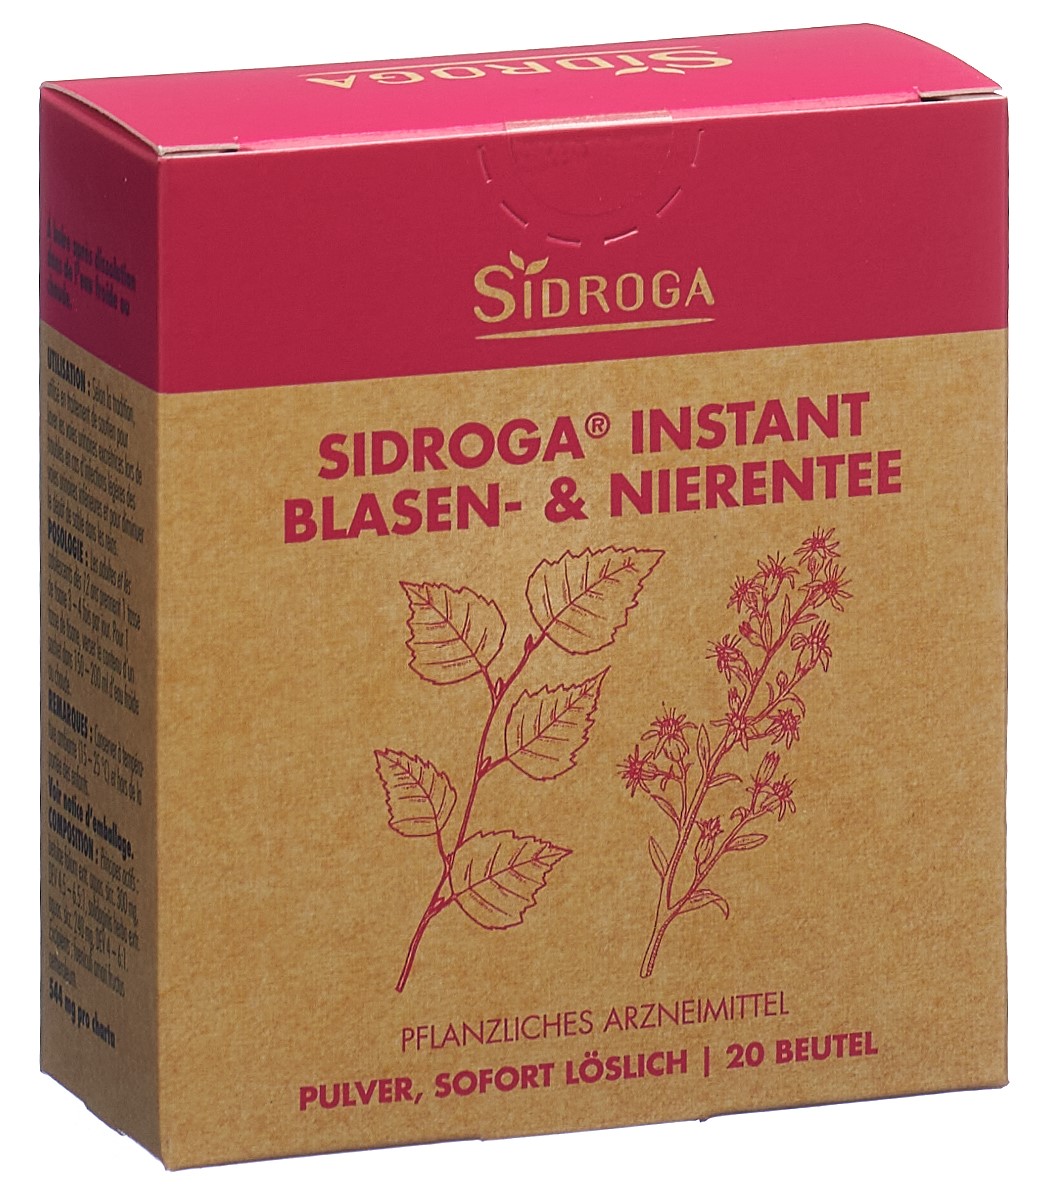 SIDROGA Instant Blasen- & Nierentee Btl 20 Stk